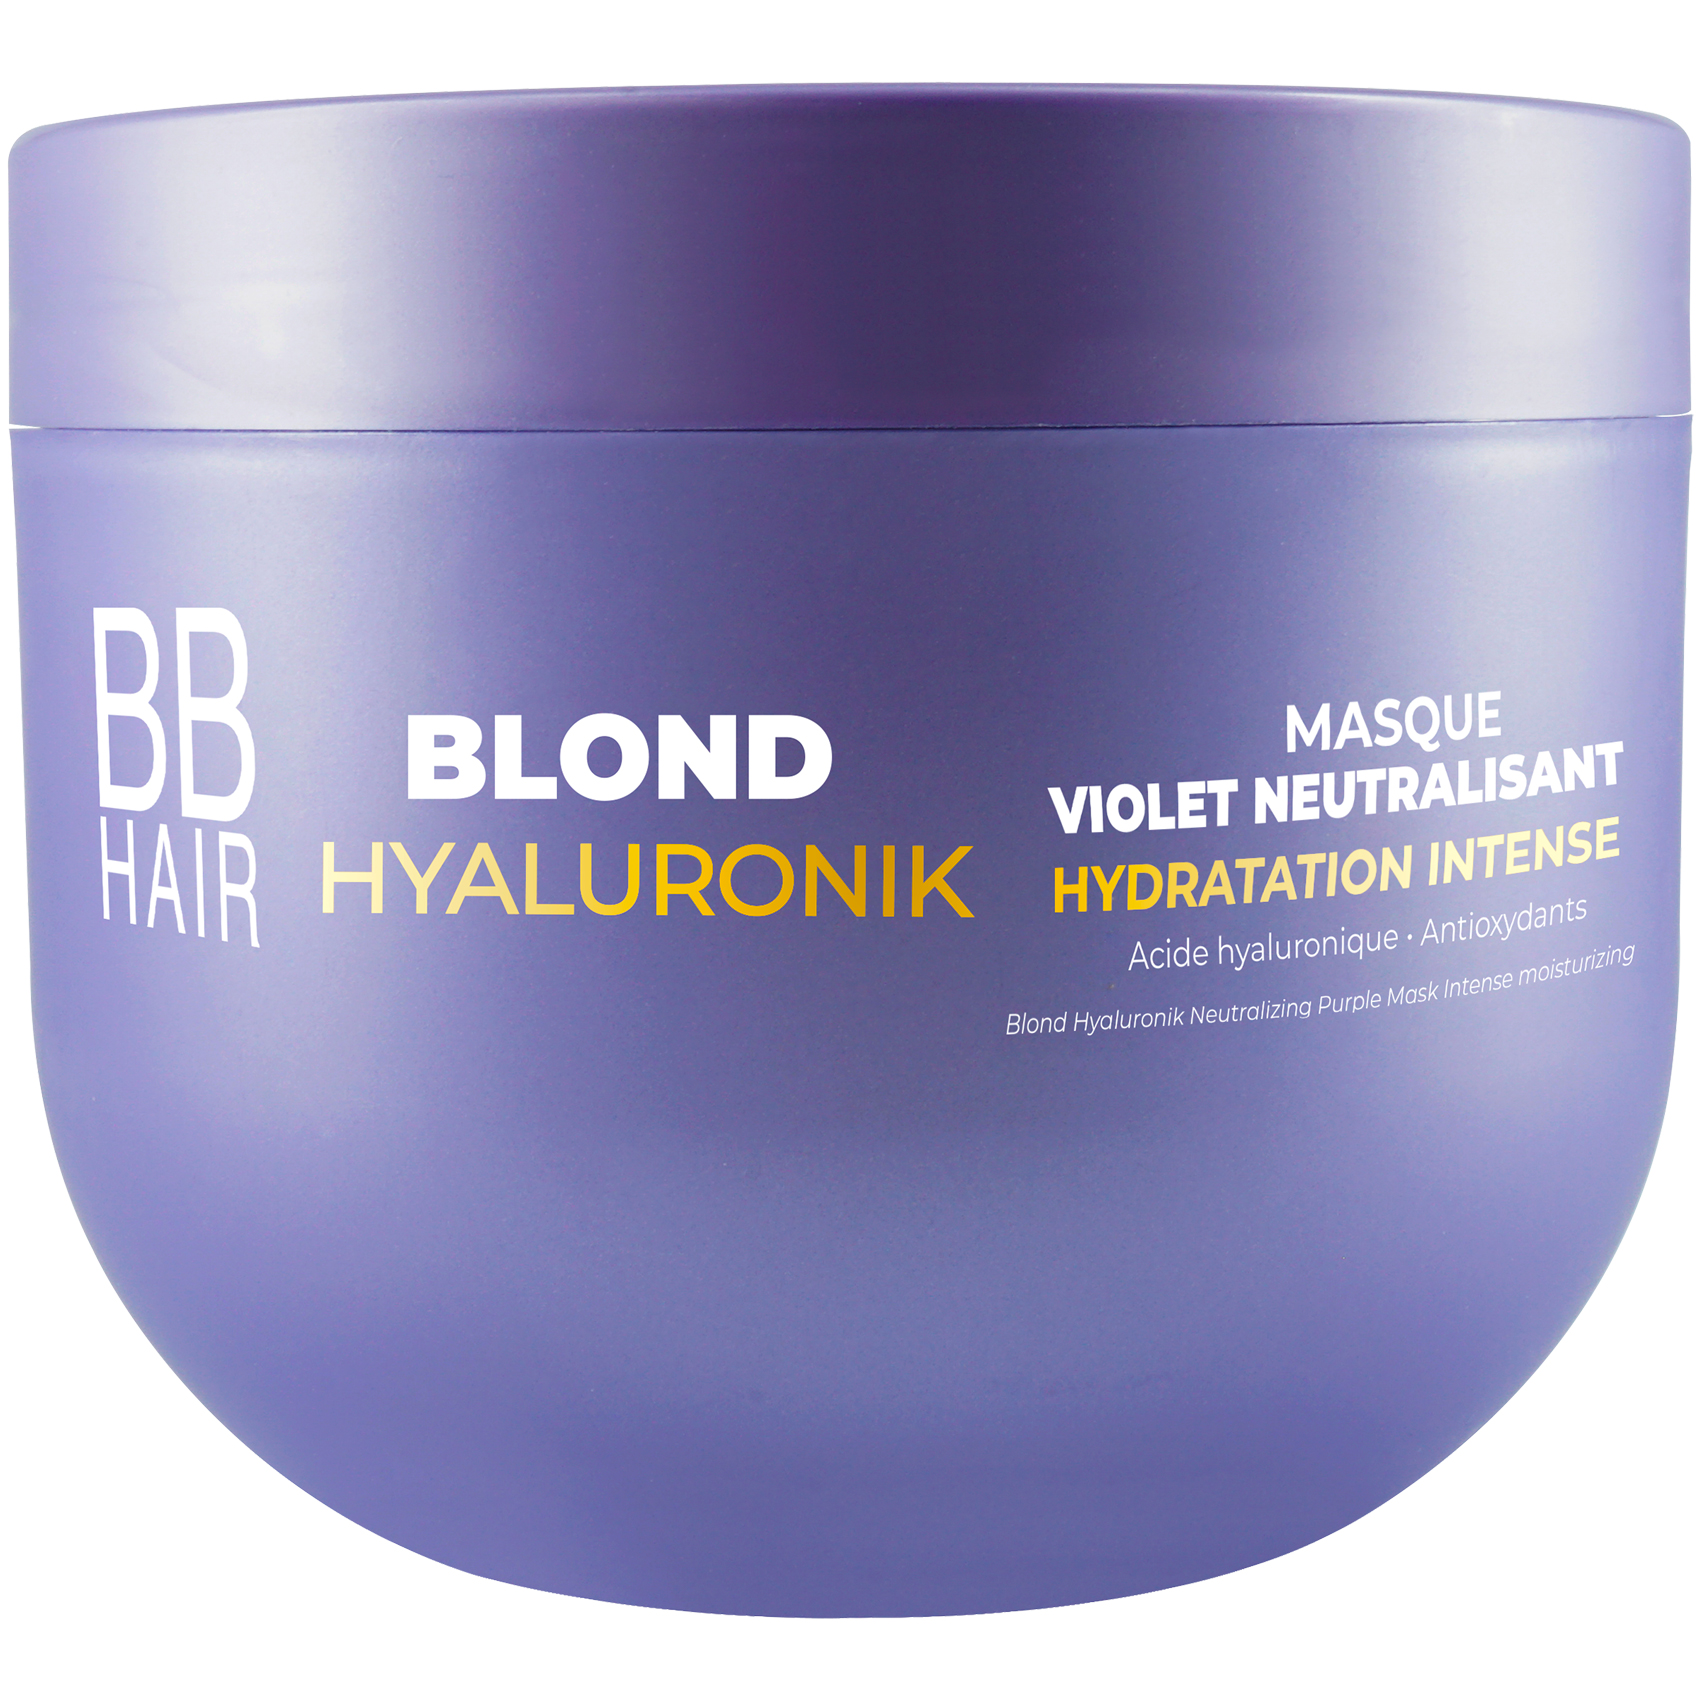 Masque Violet Neutralisant Blond Hyaluronik BBHair Generik 500 ML